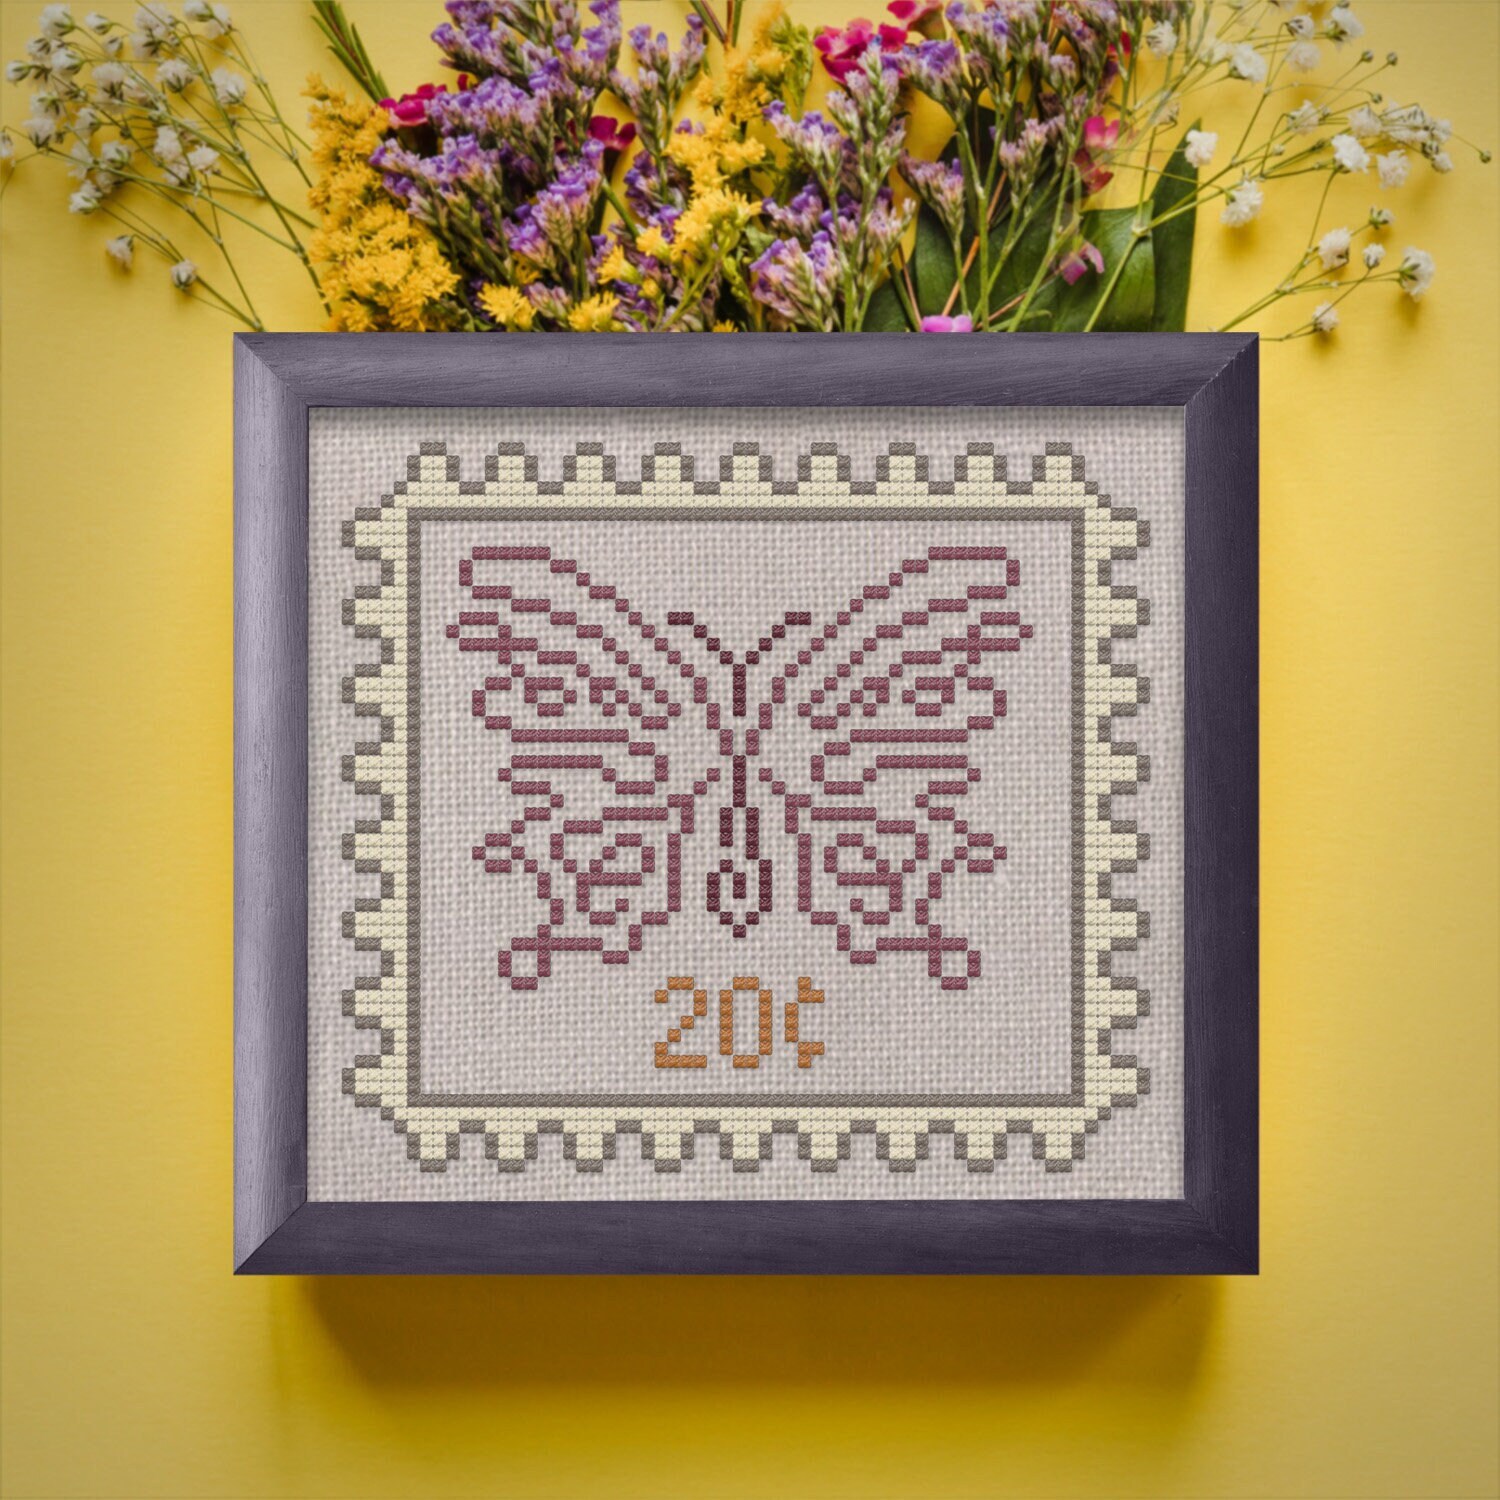 Autumn Garden Project Bag · Wild Violet Cross Stitch